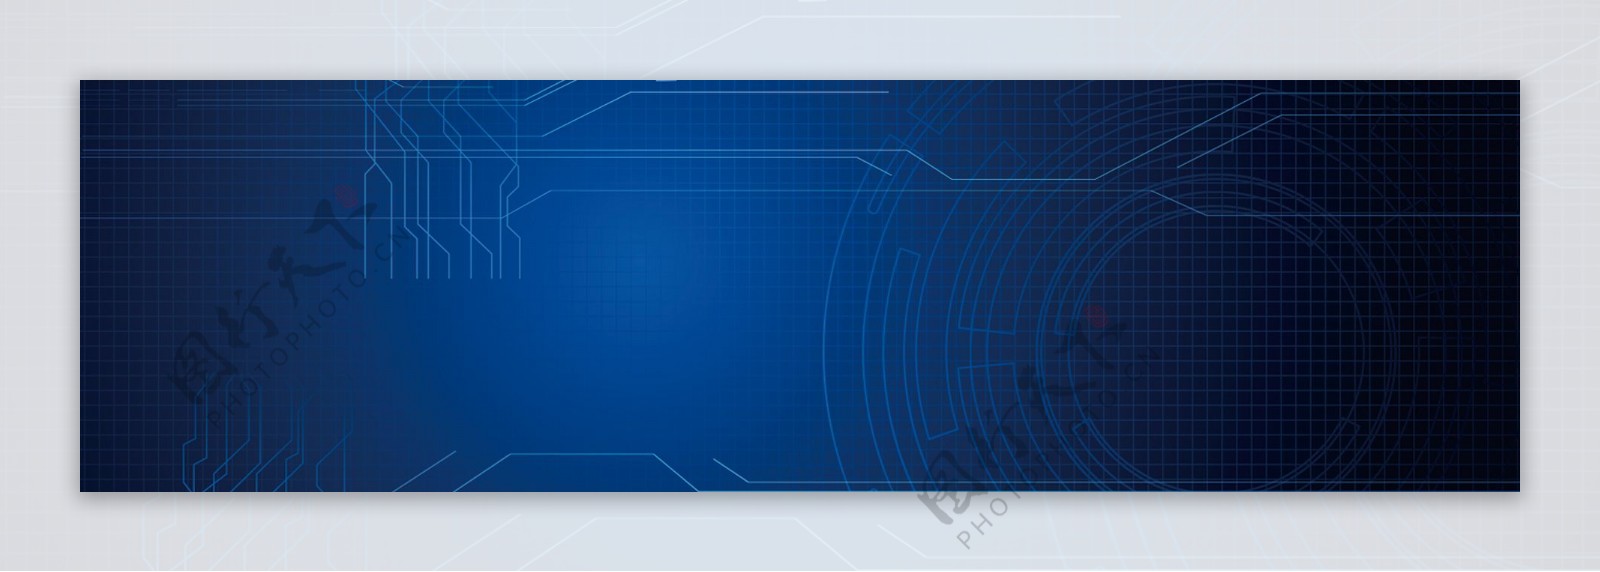 蓝色科技线条banner背景素材